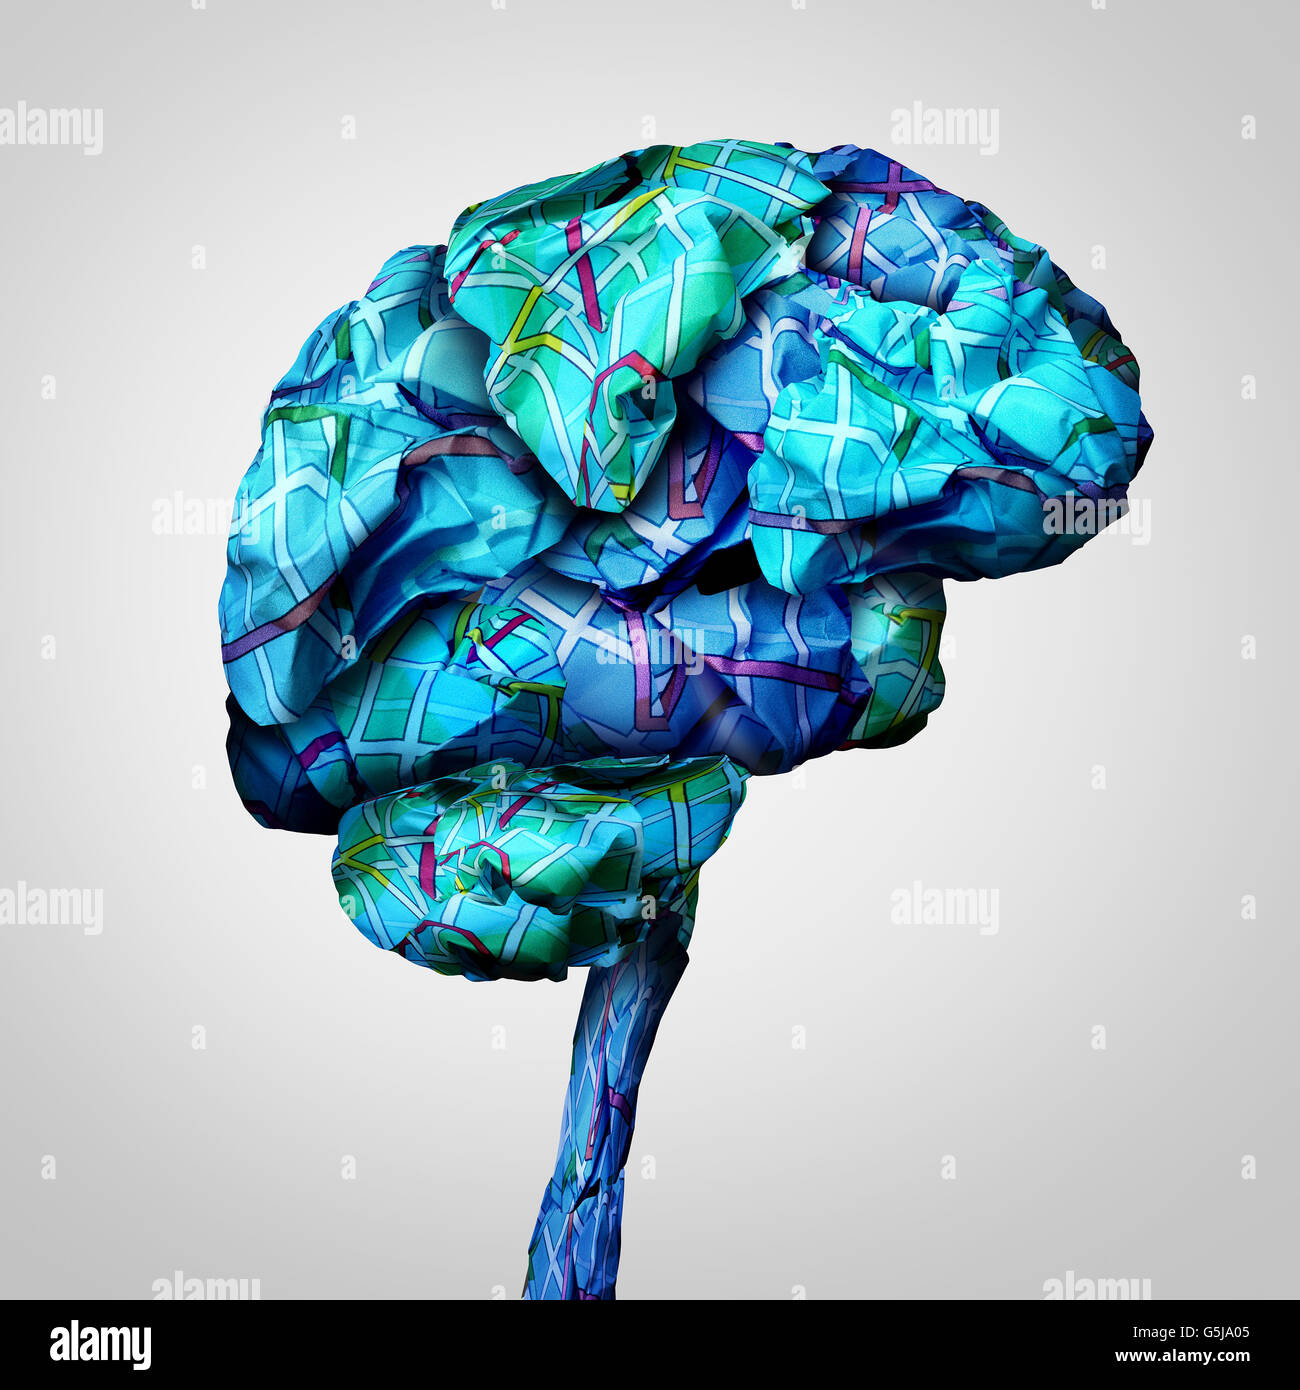 Brain mapping concept de santé mentale et de la psychologie d'un symbole ou icône défi remue-méninges en groupe de papier froissé, cartes routières sous forme d'un esprit humain dans un style 3D illustration. Banque D'Images